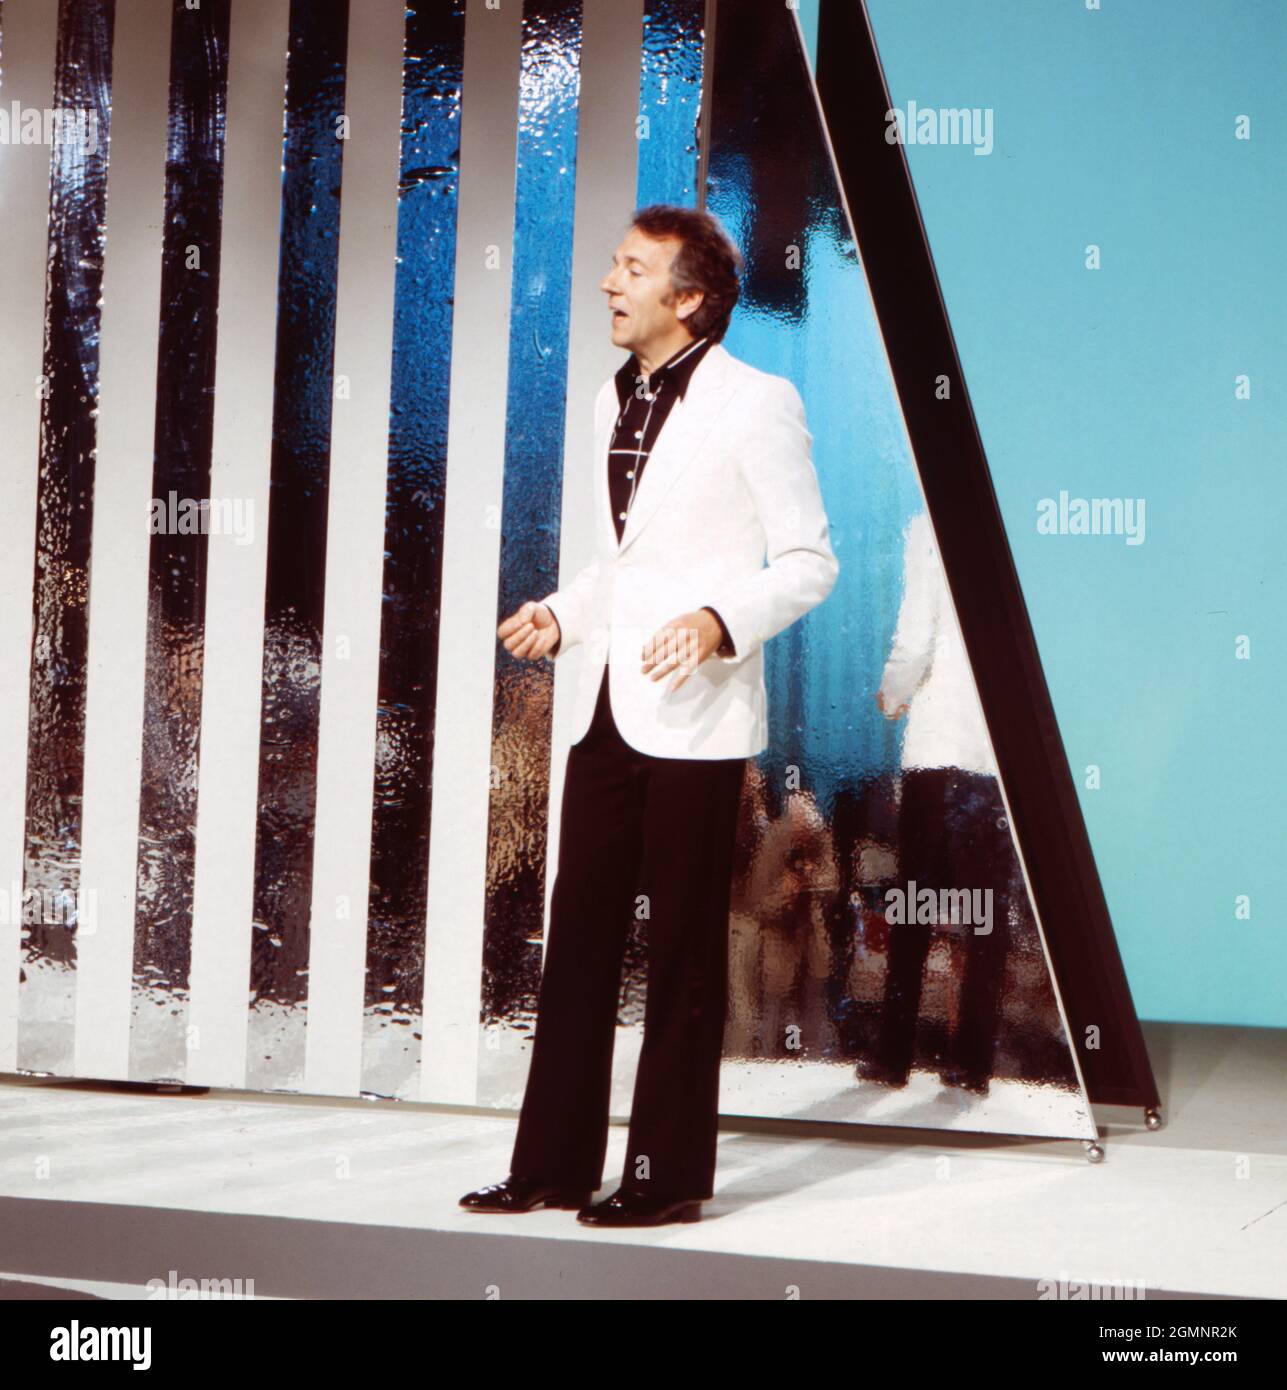 Jean Pierre Cassel, französischer Schauspieler und Sänger, bei einem  Auftritt in der Show "Hallo Peter", Deutschland 1976. French actor and  singer Jean Pierre Cassel performing at the TV show "Hallo Peter", Germany